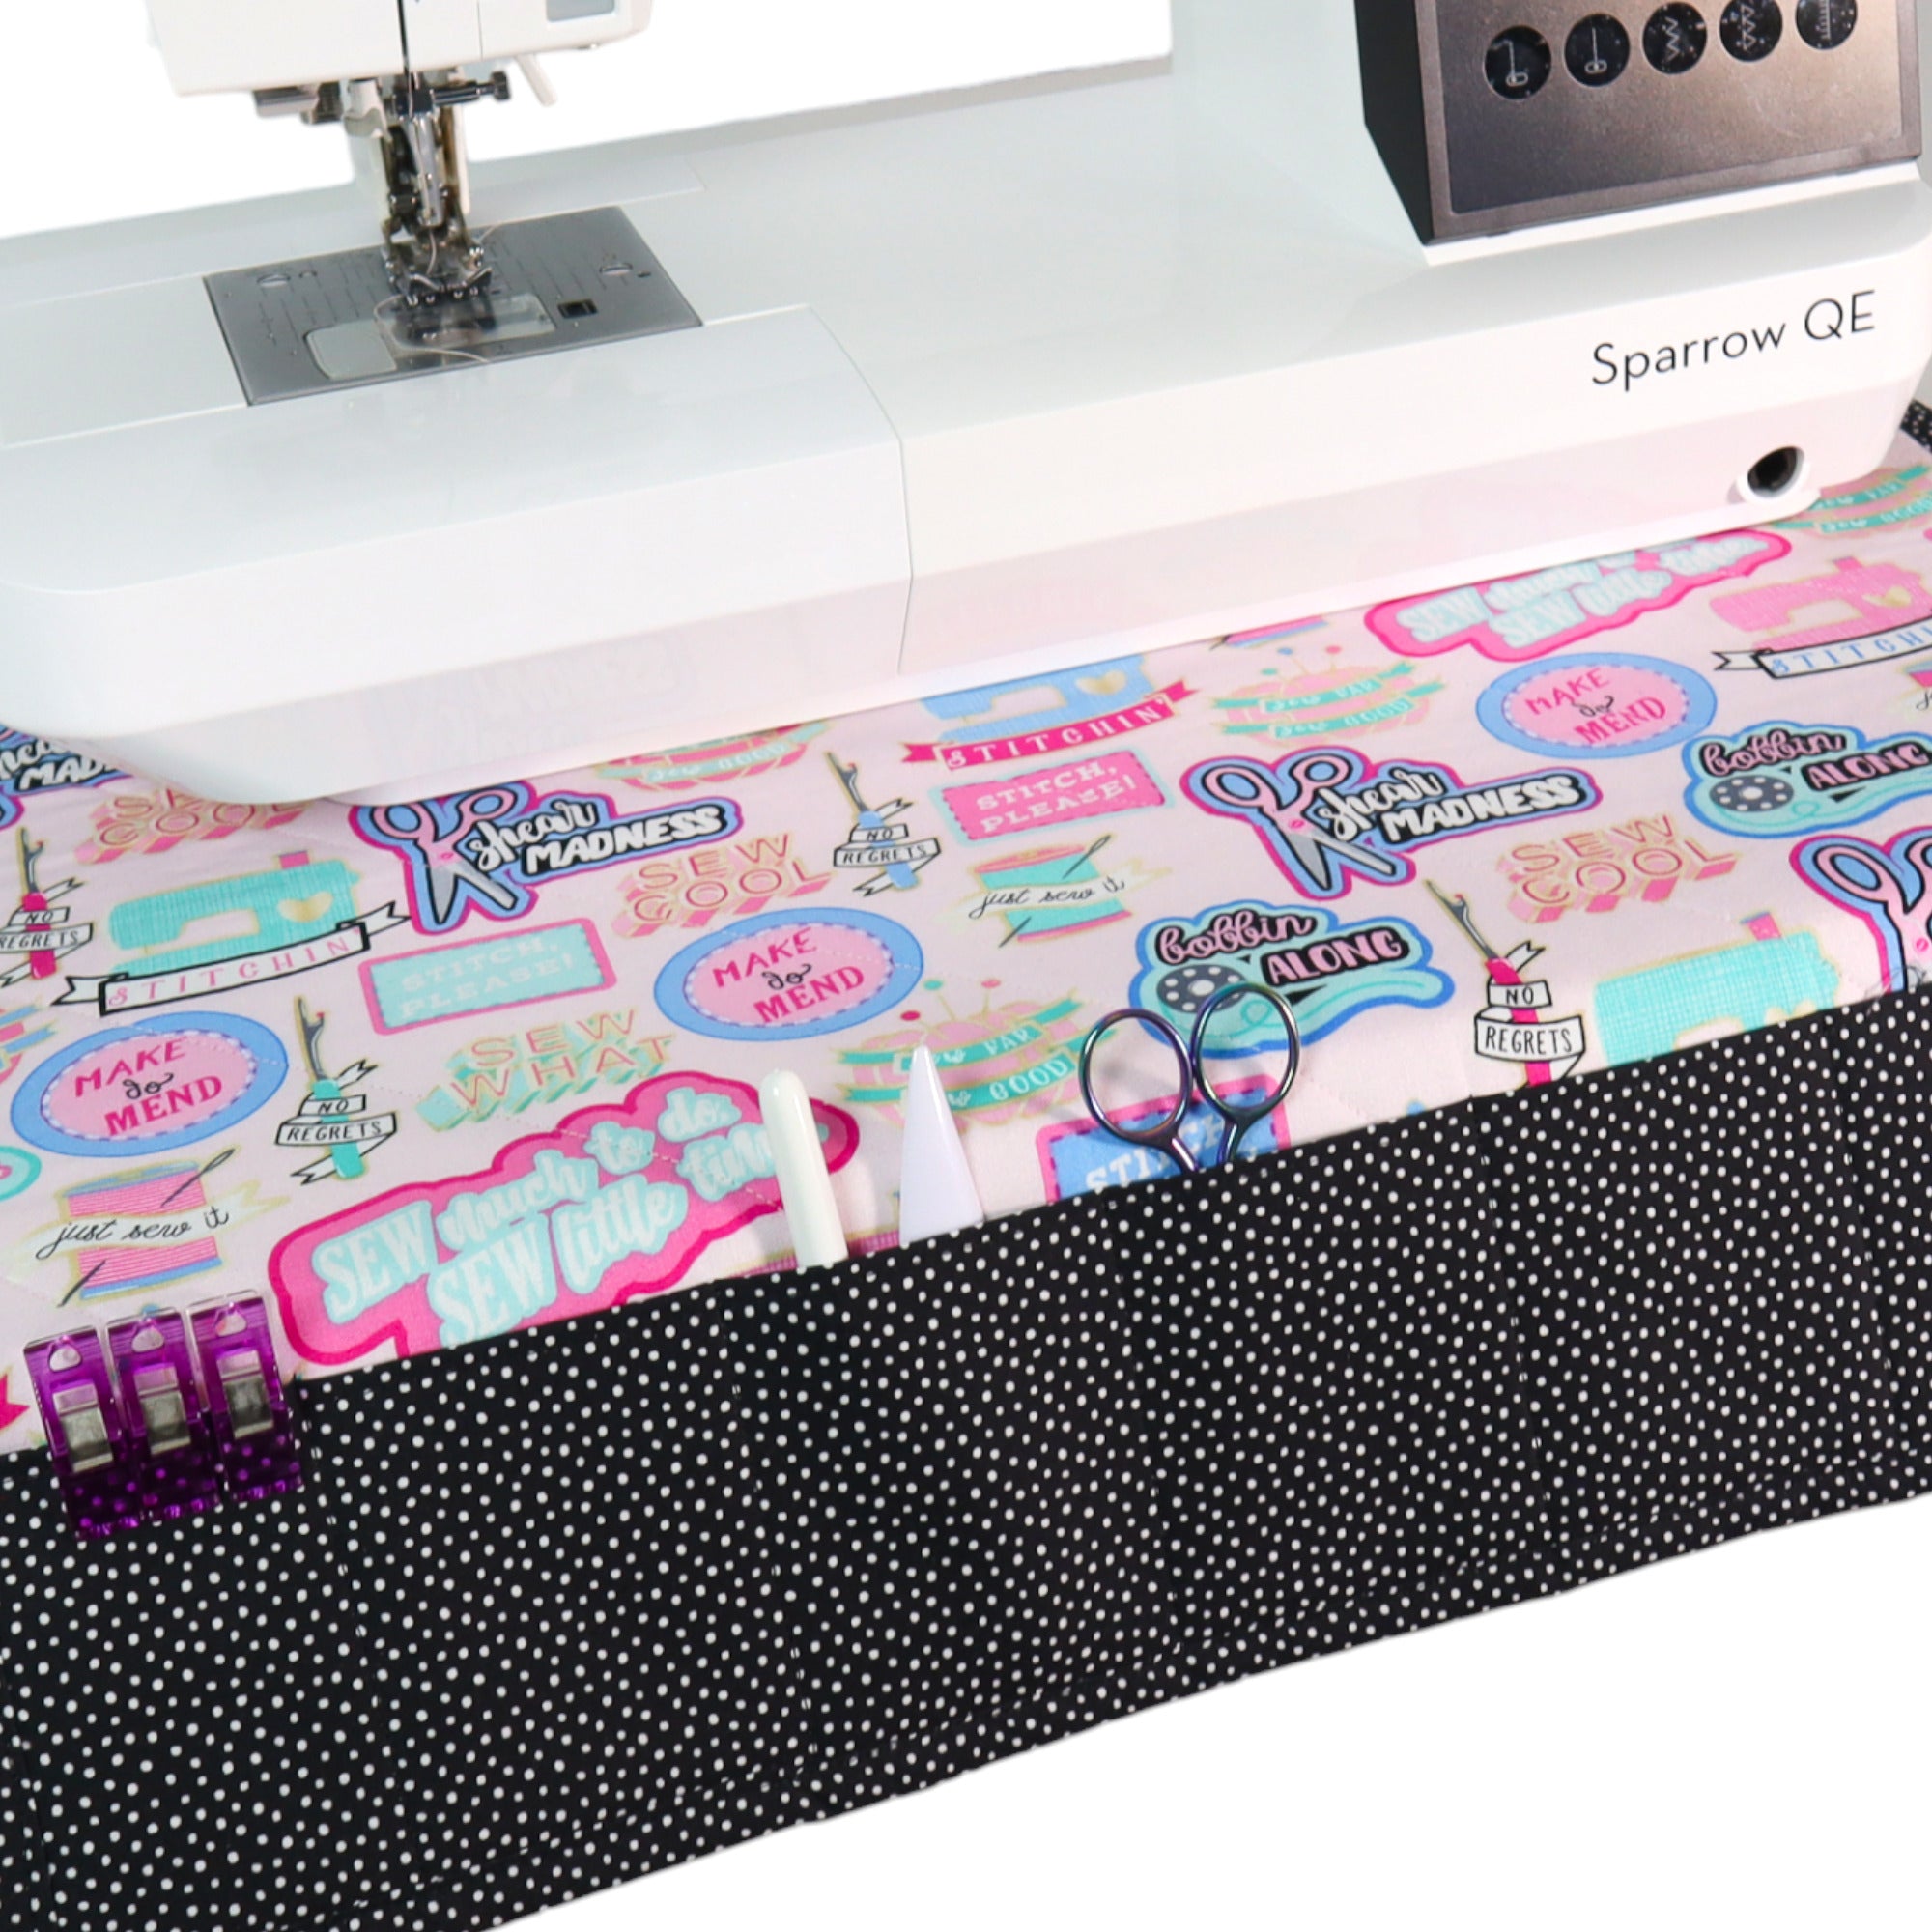 Sewing Machine Mat Free Sewing Pattern